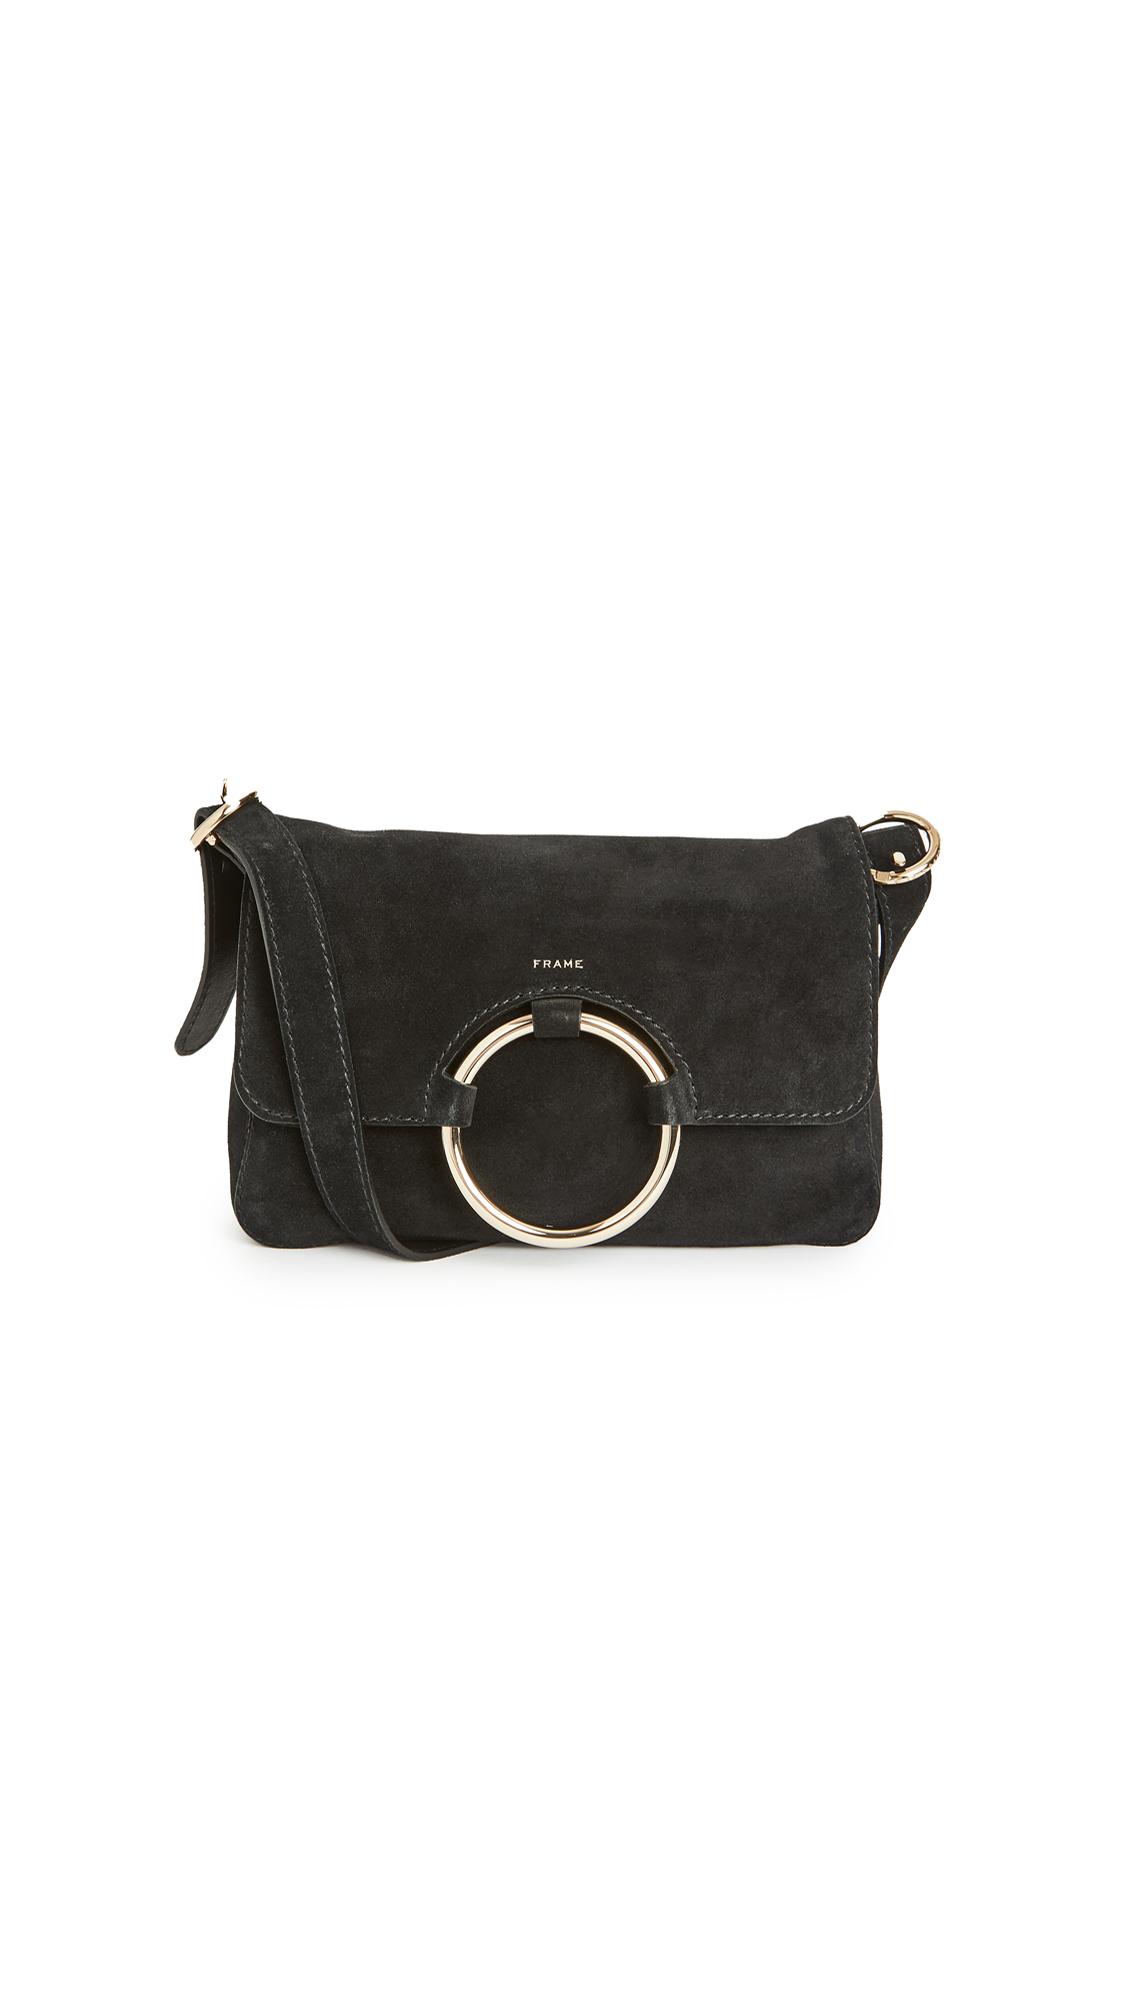 FRAME Leather Le Ring Baguette Bag in Black - Lyst